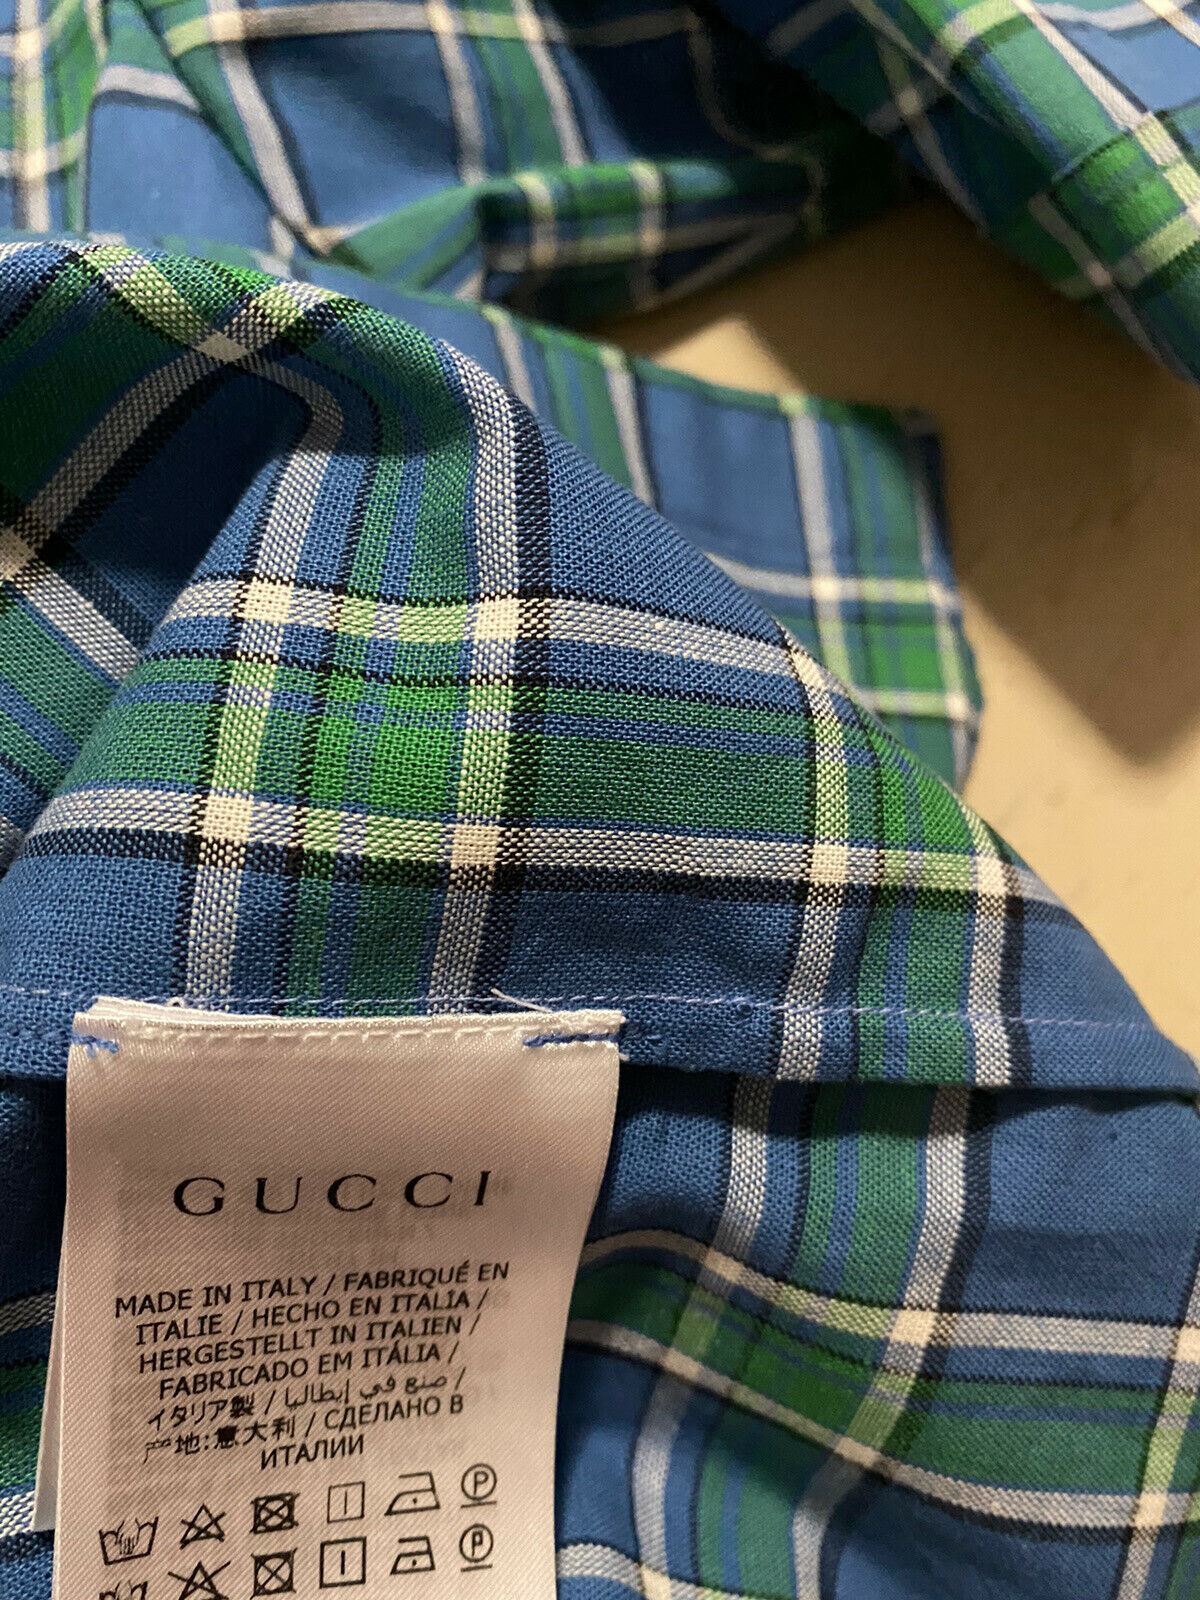 Neues Gucci-Herrenhemd mit kurzen Ärmeln, Blau, Größe L, Italien, für 750 $